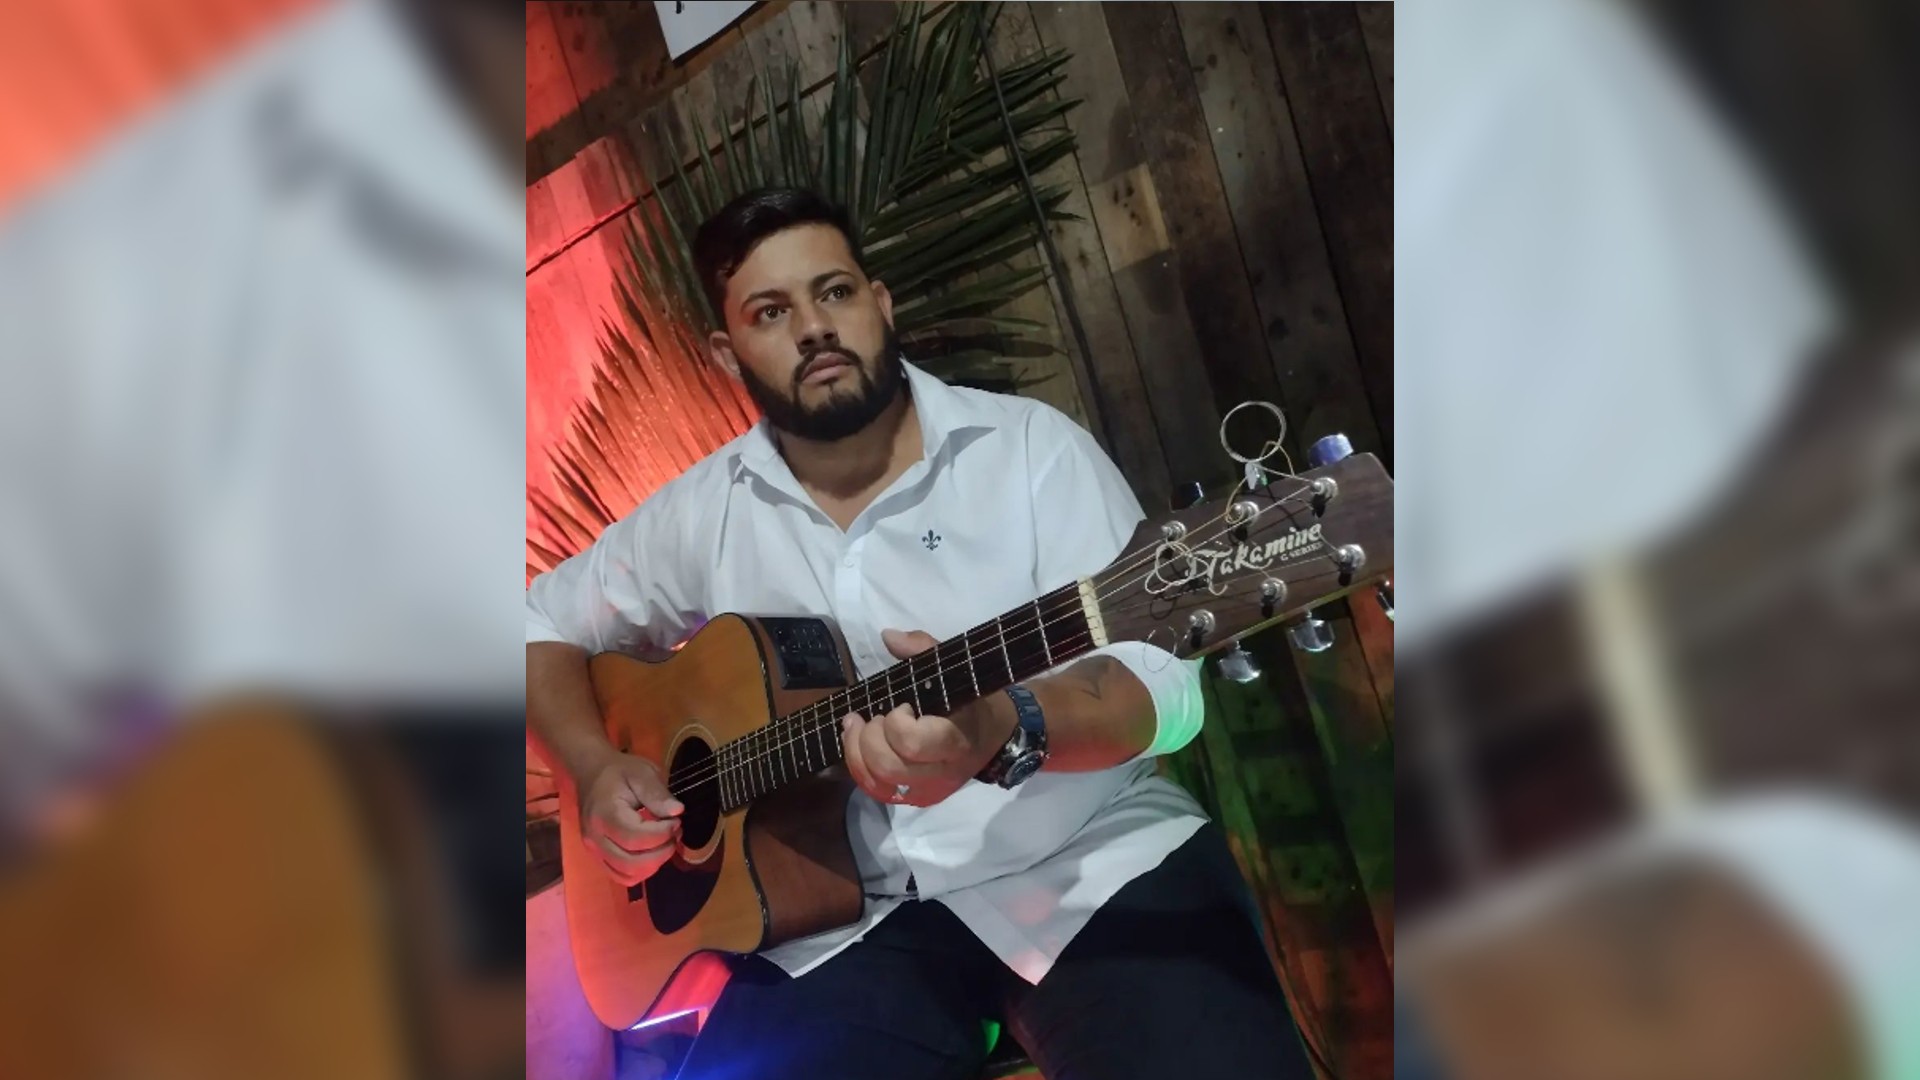 Motorista confessa ter consumido bebida alcoólica antes de provocar acidente que matou cantor em Mairinque, diz polícia 